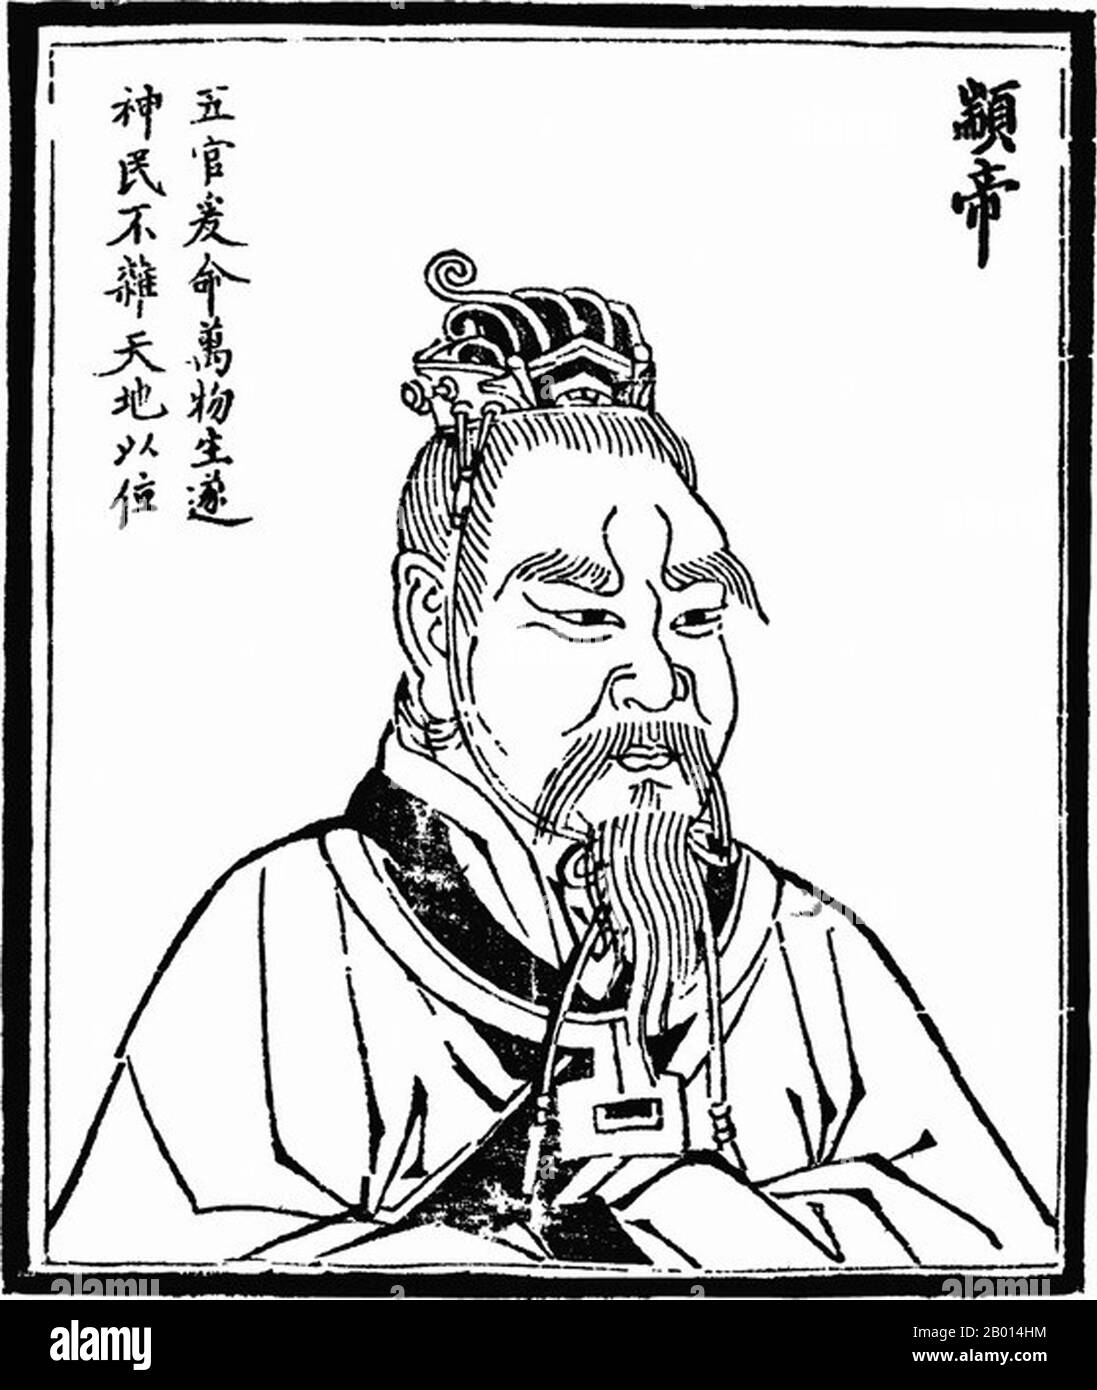 Cina: Imperatore Zhuanxu (c.2514-2436 a.C.), secondo dei leggendari 'cinque imperatori'. Illustrazione, c. 1498 Zhuanxu, conosciuto anche come Gaoyang, fu un imperatore mitologico dell'antica Cina. Nipote dell'Imperatore giallo, divenne sovrano all'età di venti anni. Ha passato le riforme religiose per opporsi allo sciamanesimo e ha contribuito ad un calendario unificato e al campo dell'astrologia. A volte è adorato come il dio della Stella polare. I tre sovrani e i cinque imperatori sono una miscela di governanti mitologici ed eroi culturali dell'antica Cina che datano liberamente dal periodo c. 3500-2000 BCE. Foto Stock